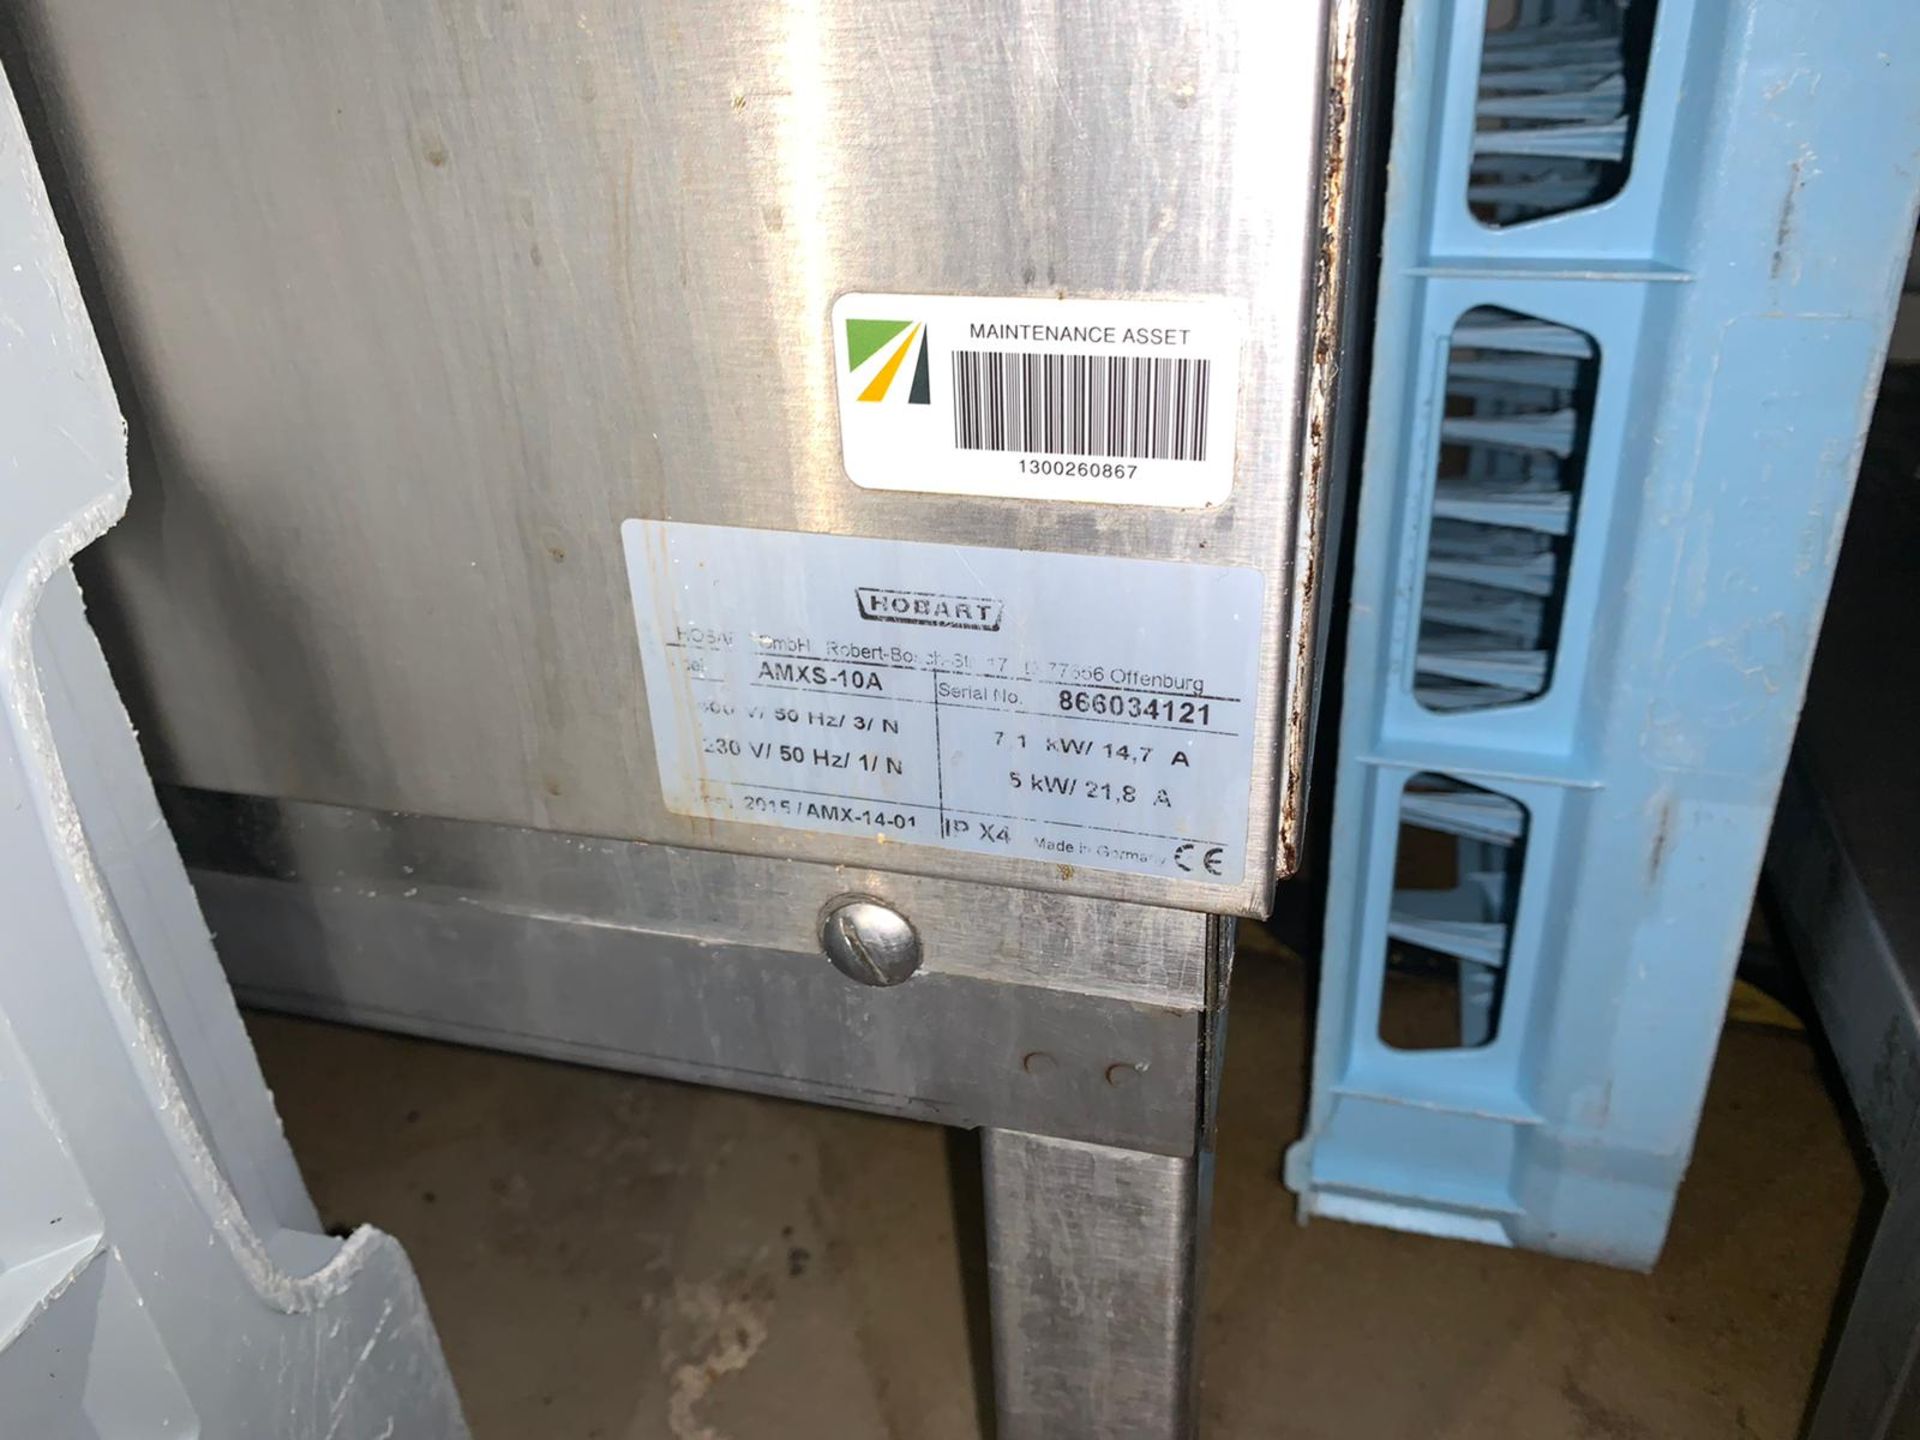 Hobart Commercial Grade Conveyor Dishwasher & Sink Unit - Image 8 of 9